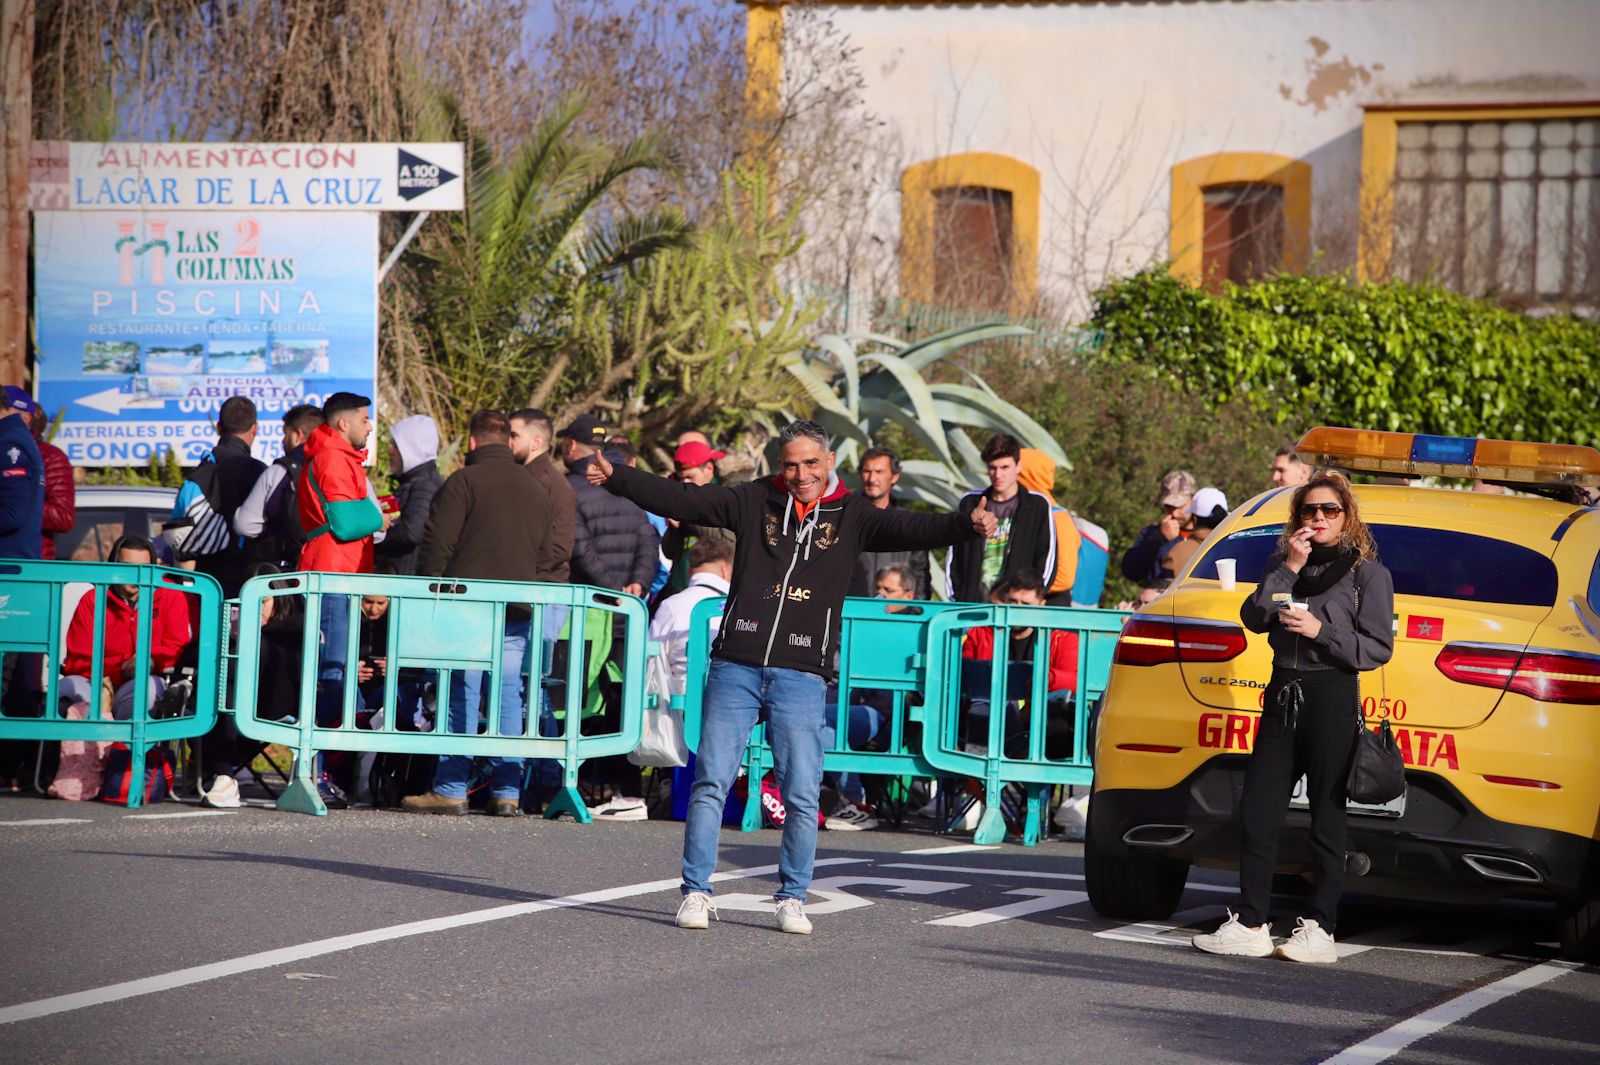 Rally-Crono Ciudad de Córdoba: el espectáculo del automovilismo en imágenes